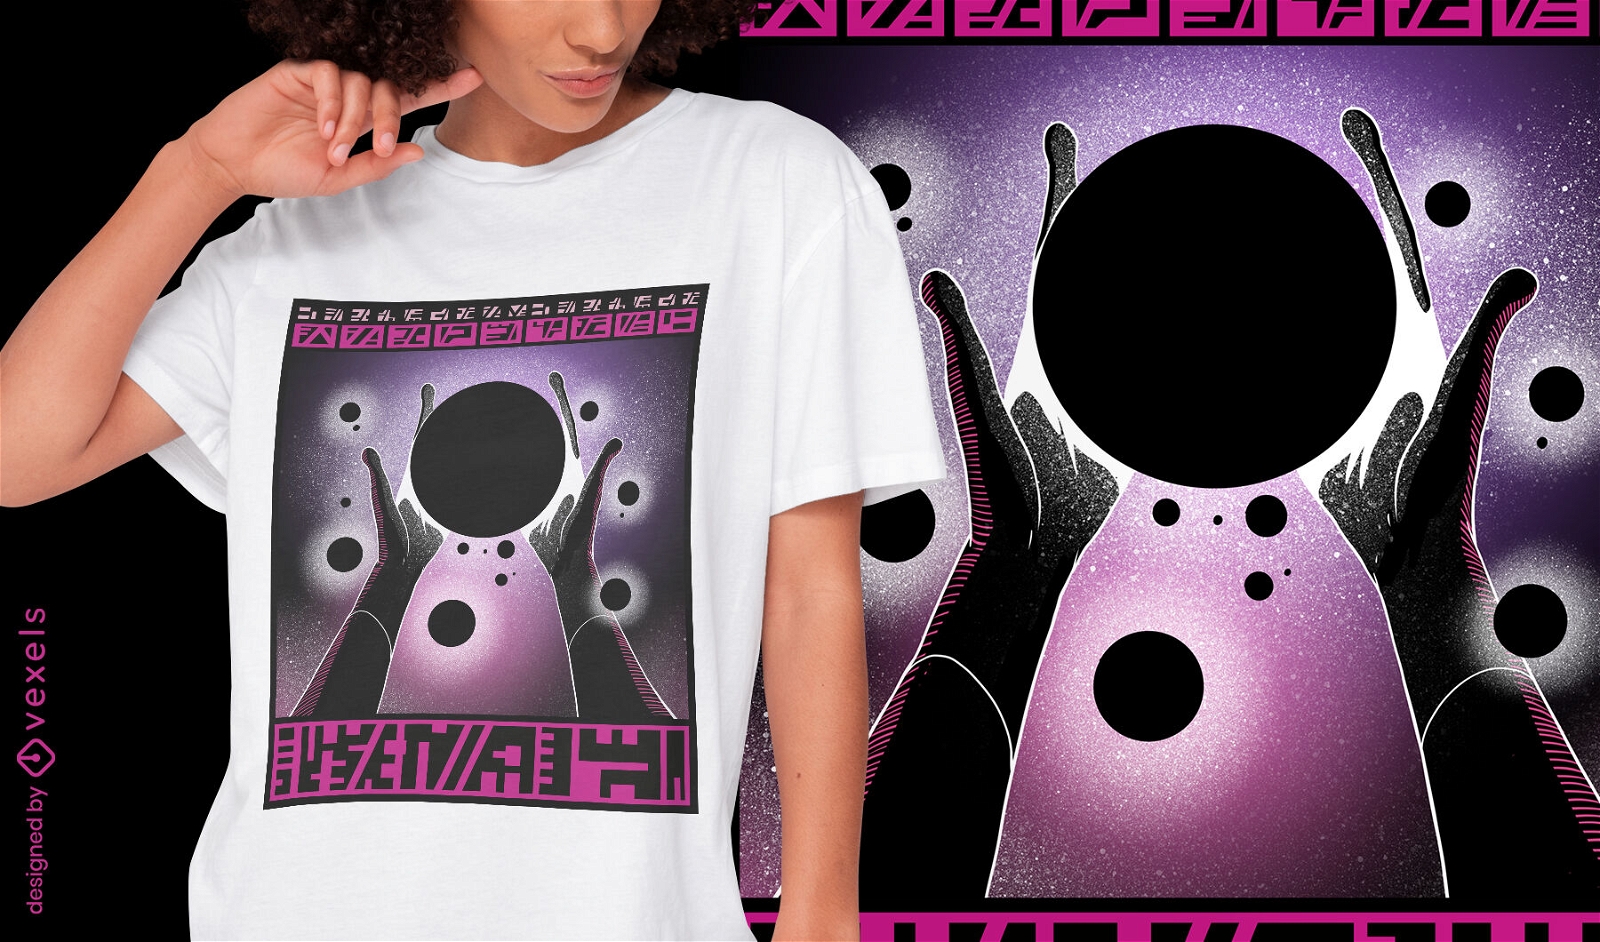 Diseño de camiseta de manos alienígenas cósmicas de fantasía